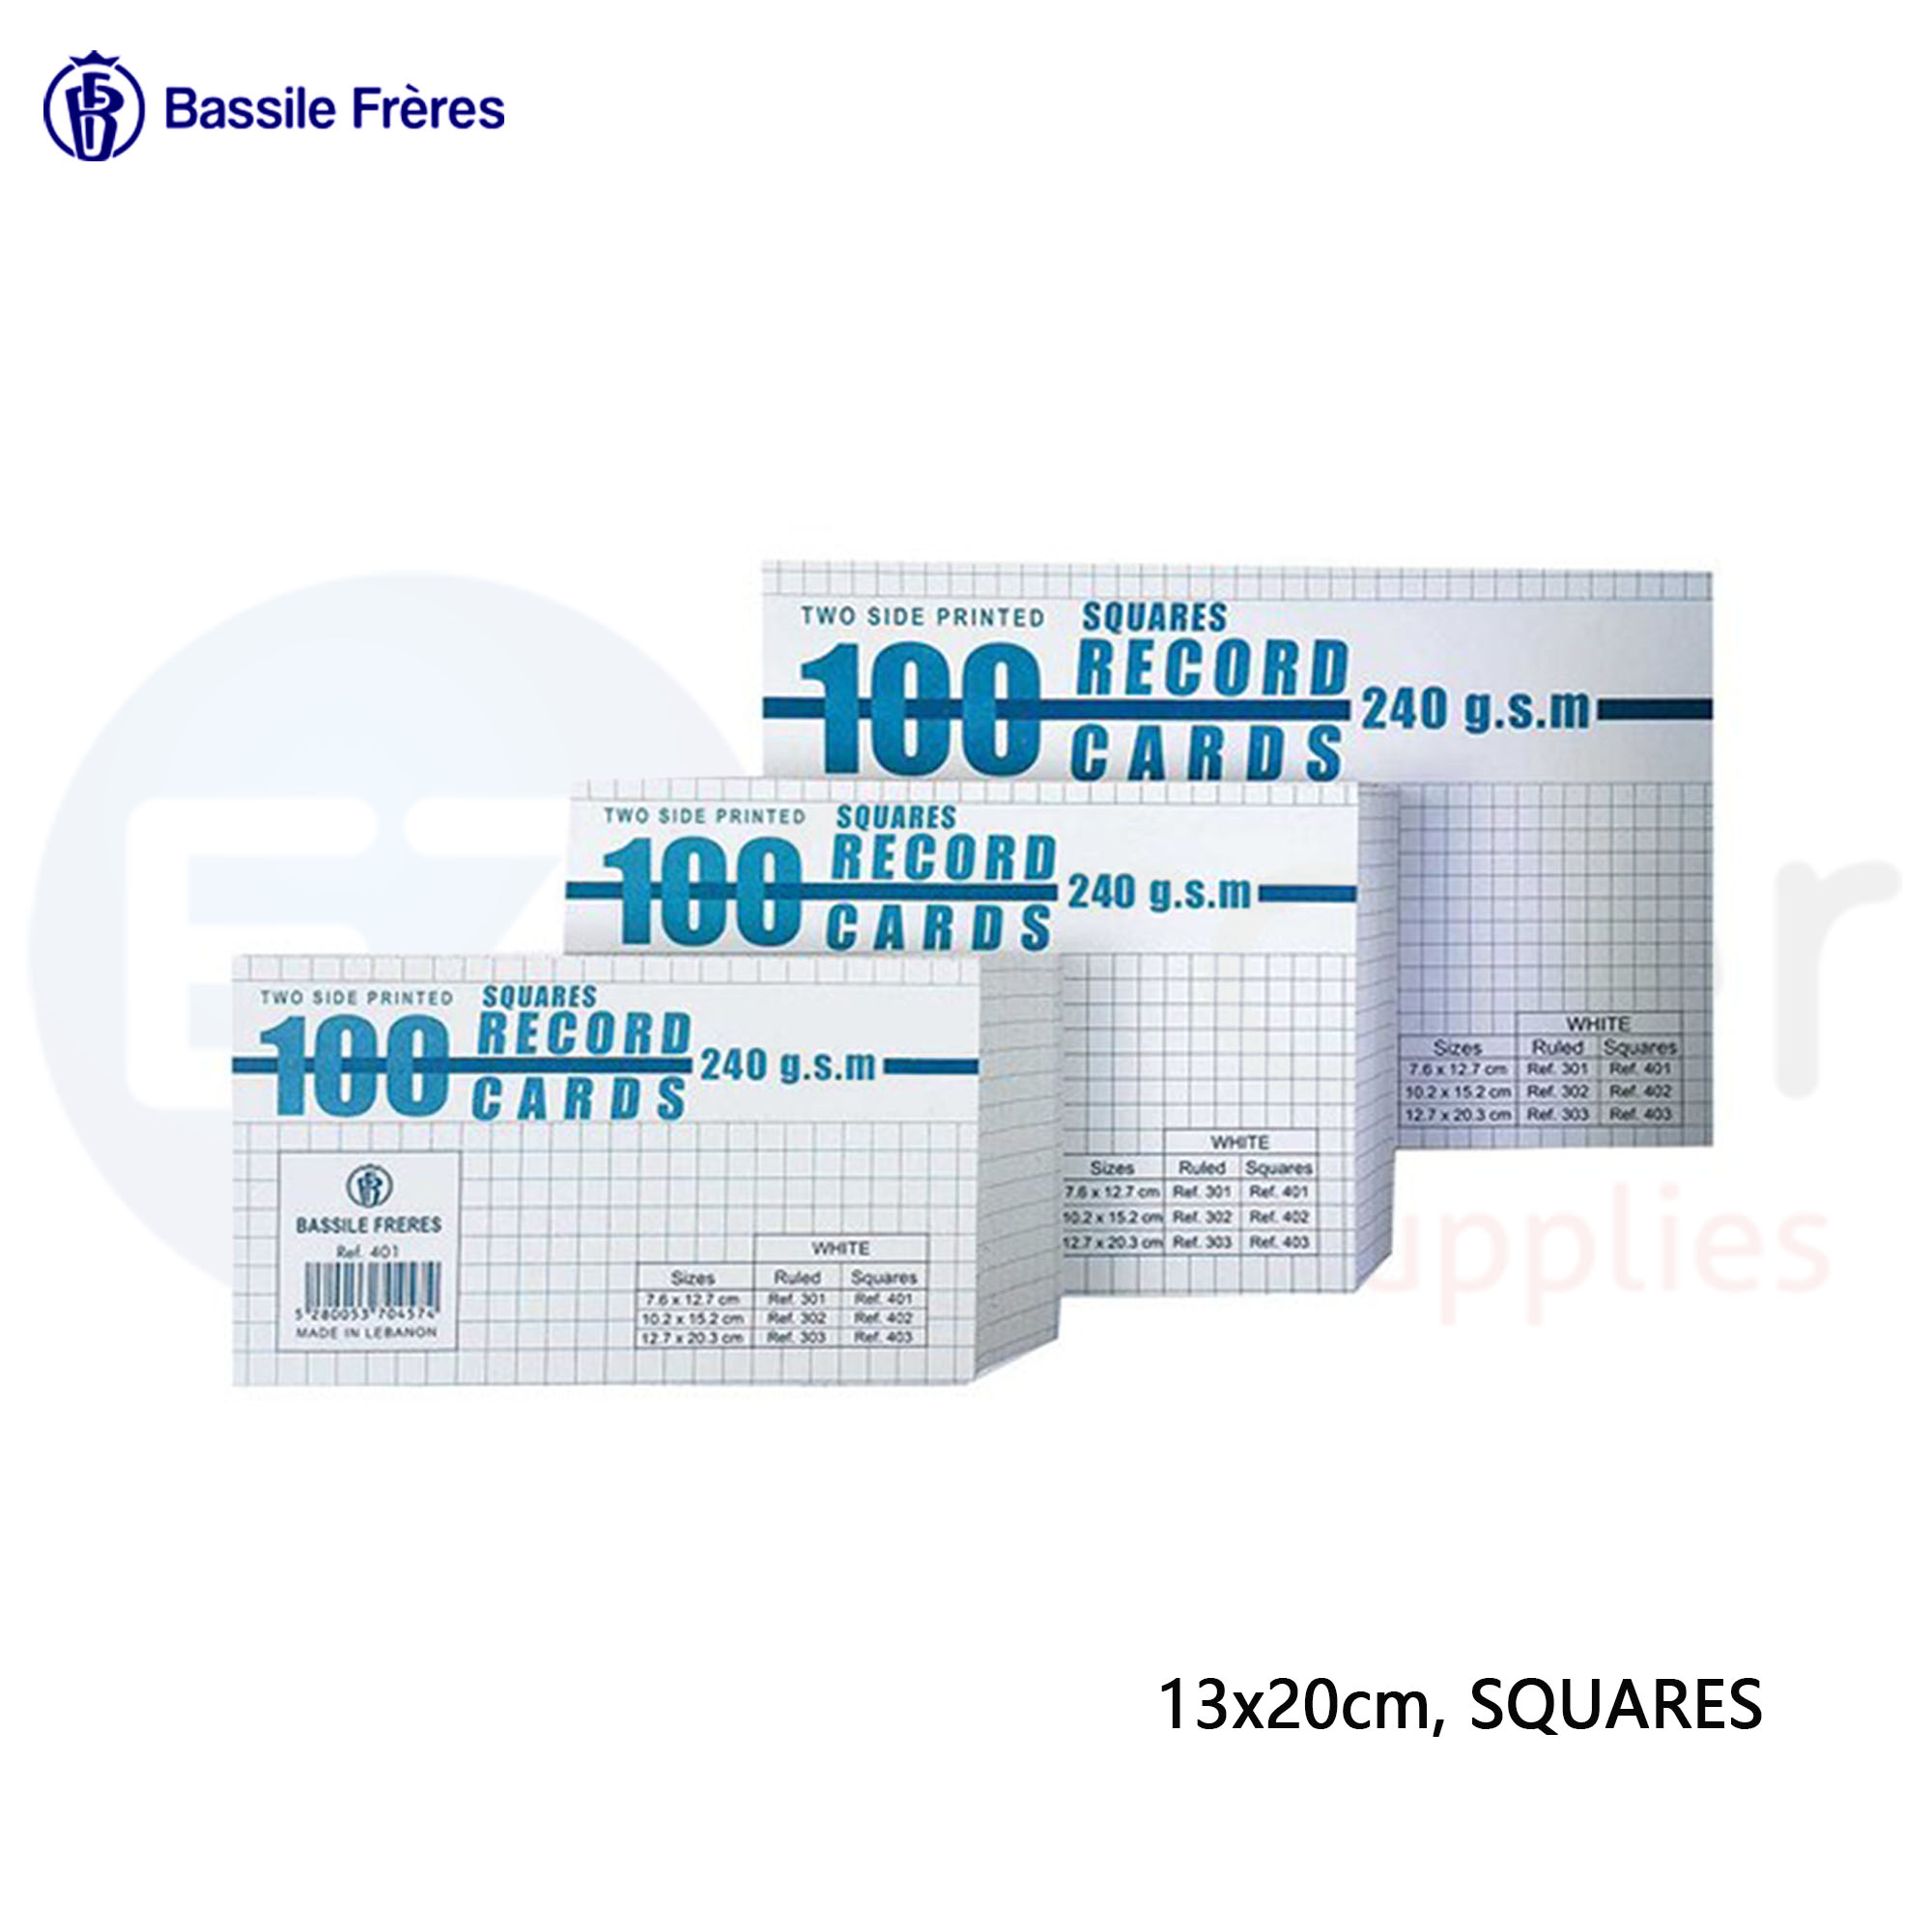 +Index card 13x20cm squares